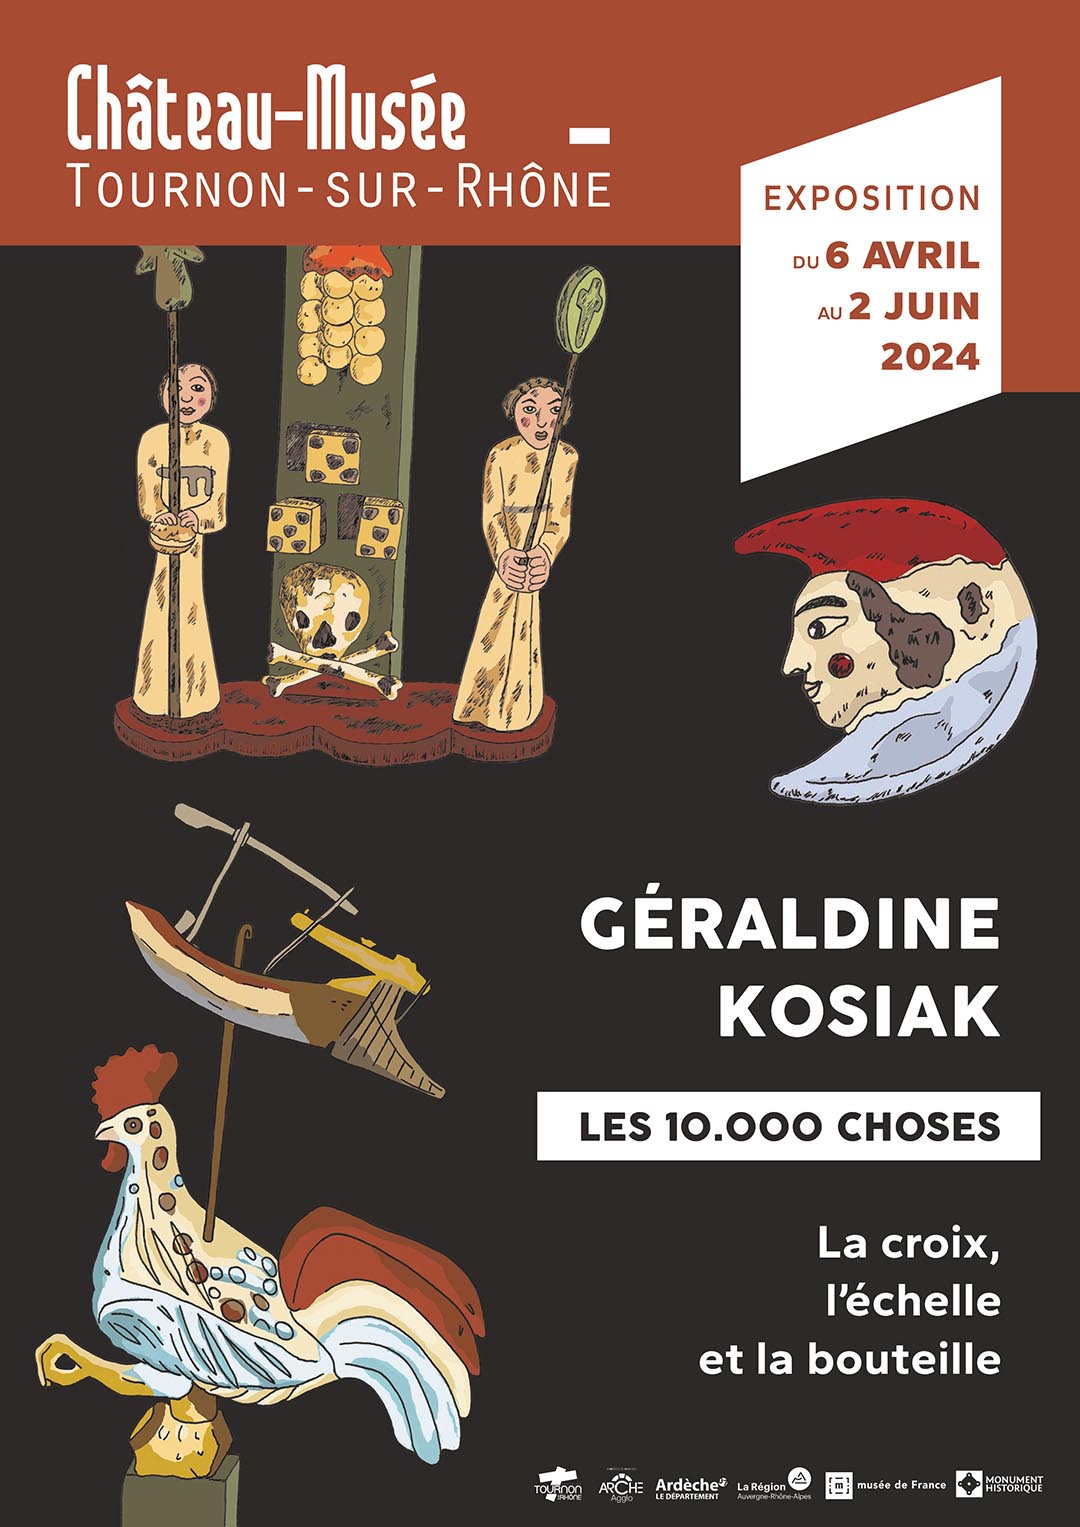 Exposition de Géraldine Kosiak au Château-musée du 6 avril au 12 juin 2024.